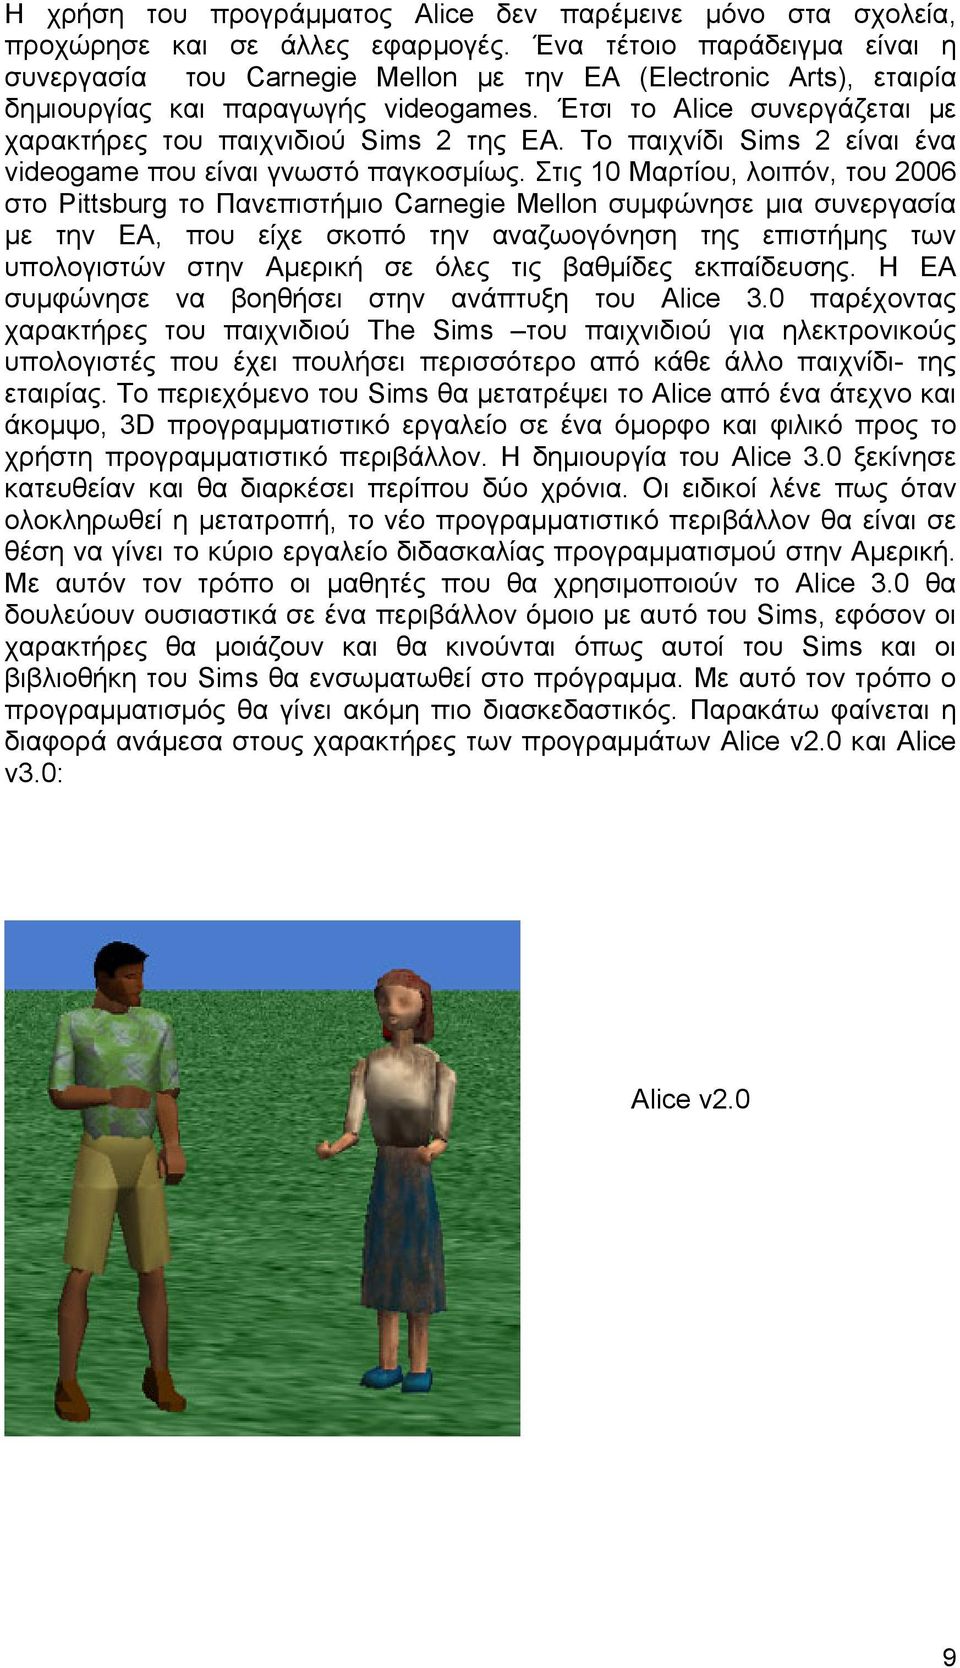 Έτσι το Alice συνεργάζεται με χαρακτήρες του παιχνιδιού Sims 2 της EA. Το παιχνίδι Sims 2 είναι ένα videogame που είναι γνωστό παγκοσμίως.